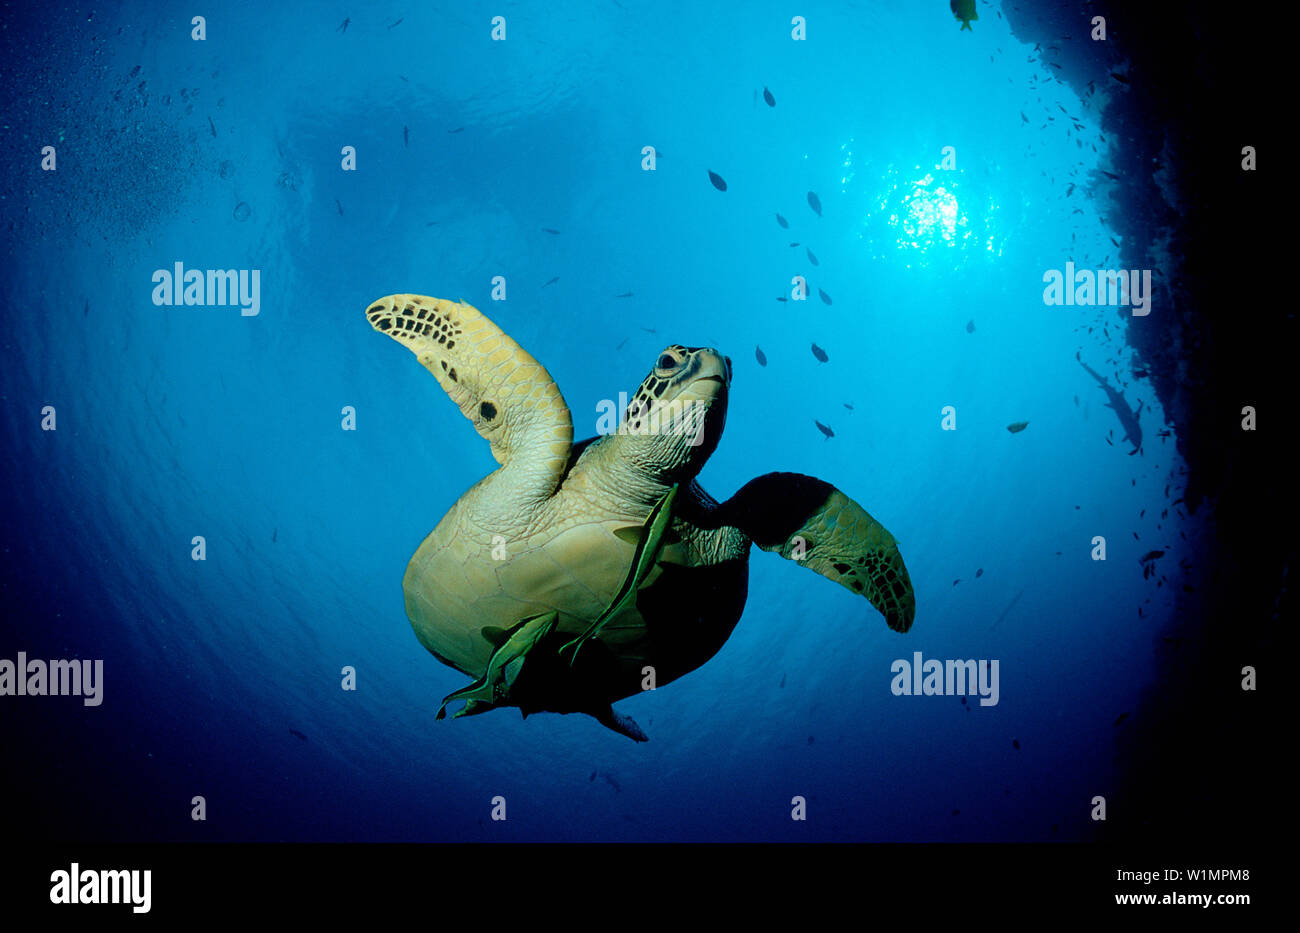 Suppenschildkroete, Meeresschildkroete, Green sea tu, Green sea turtle, green turtle, Chelonia mydas Stock Photo